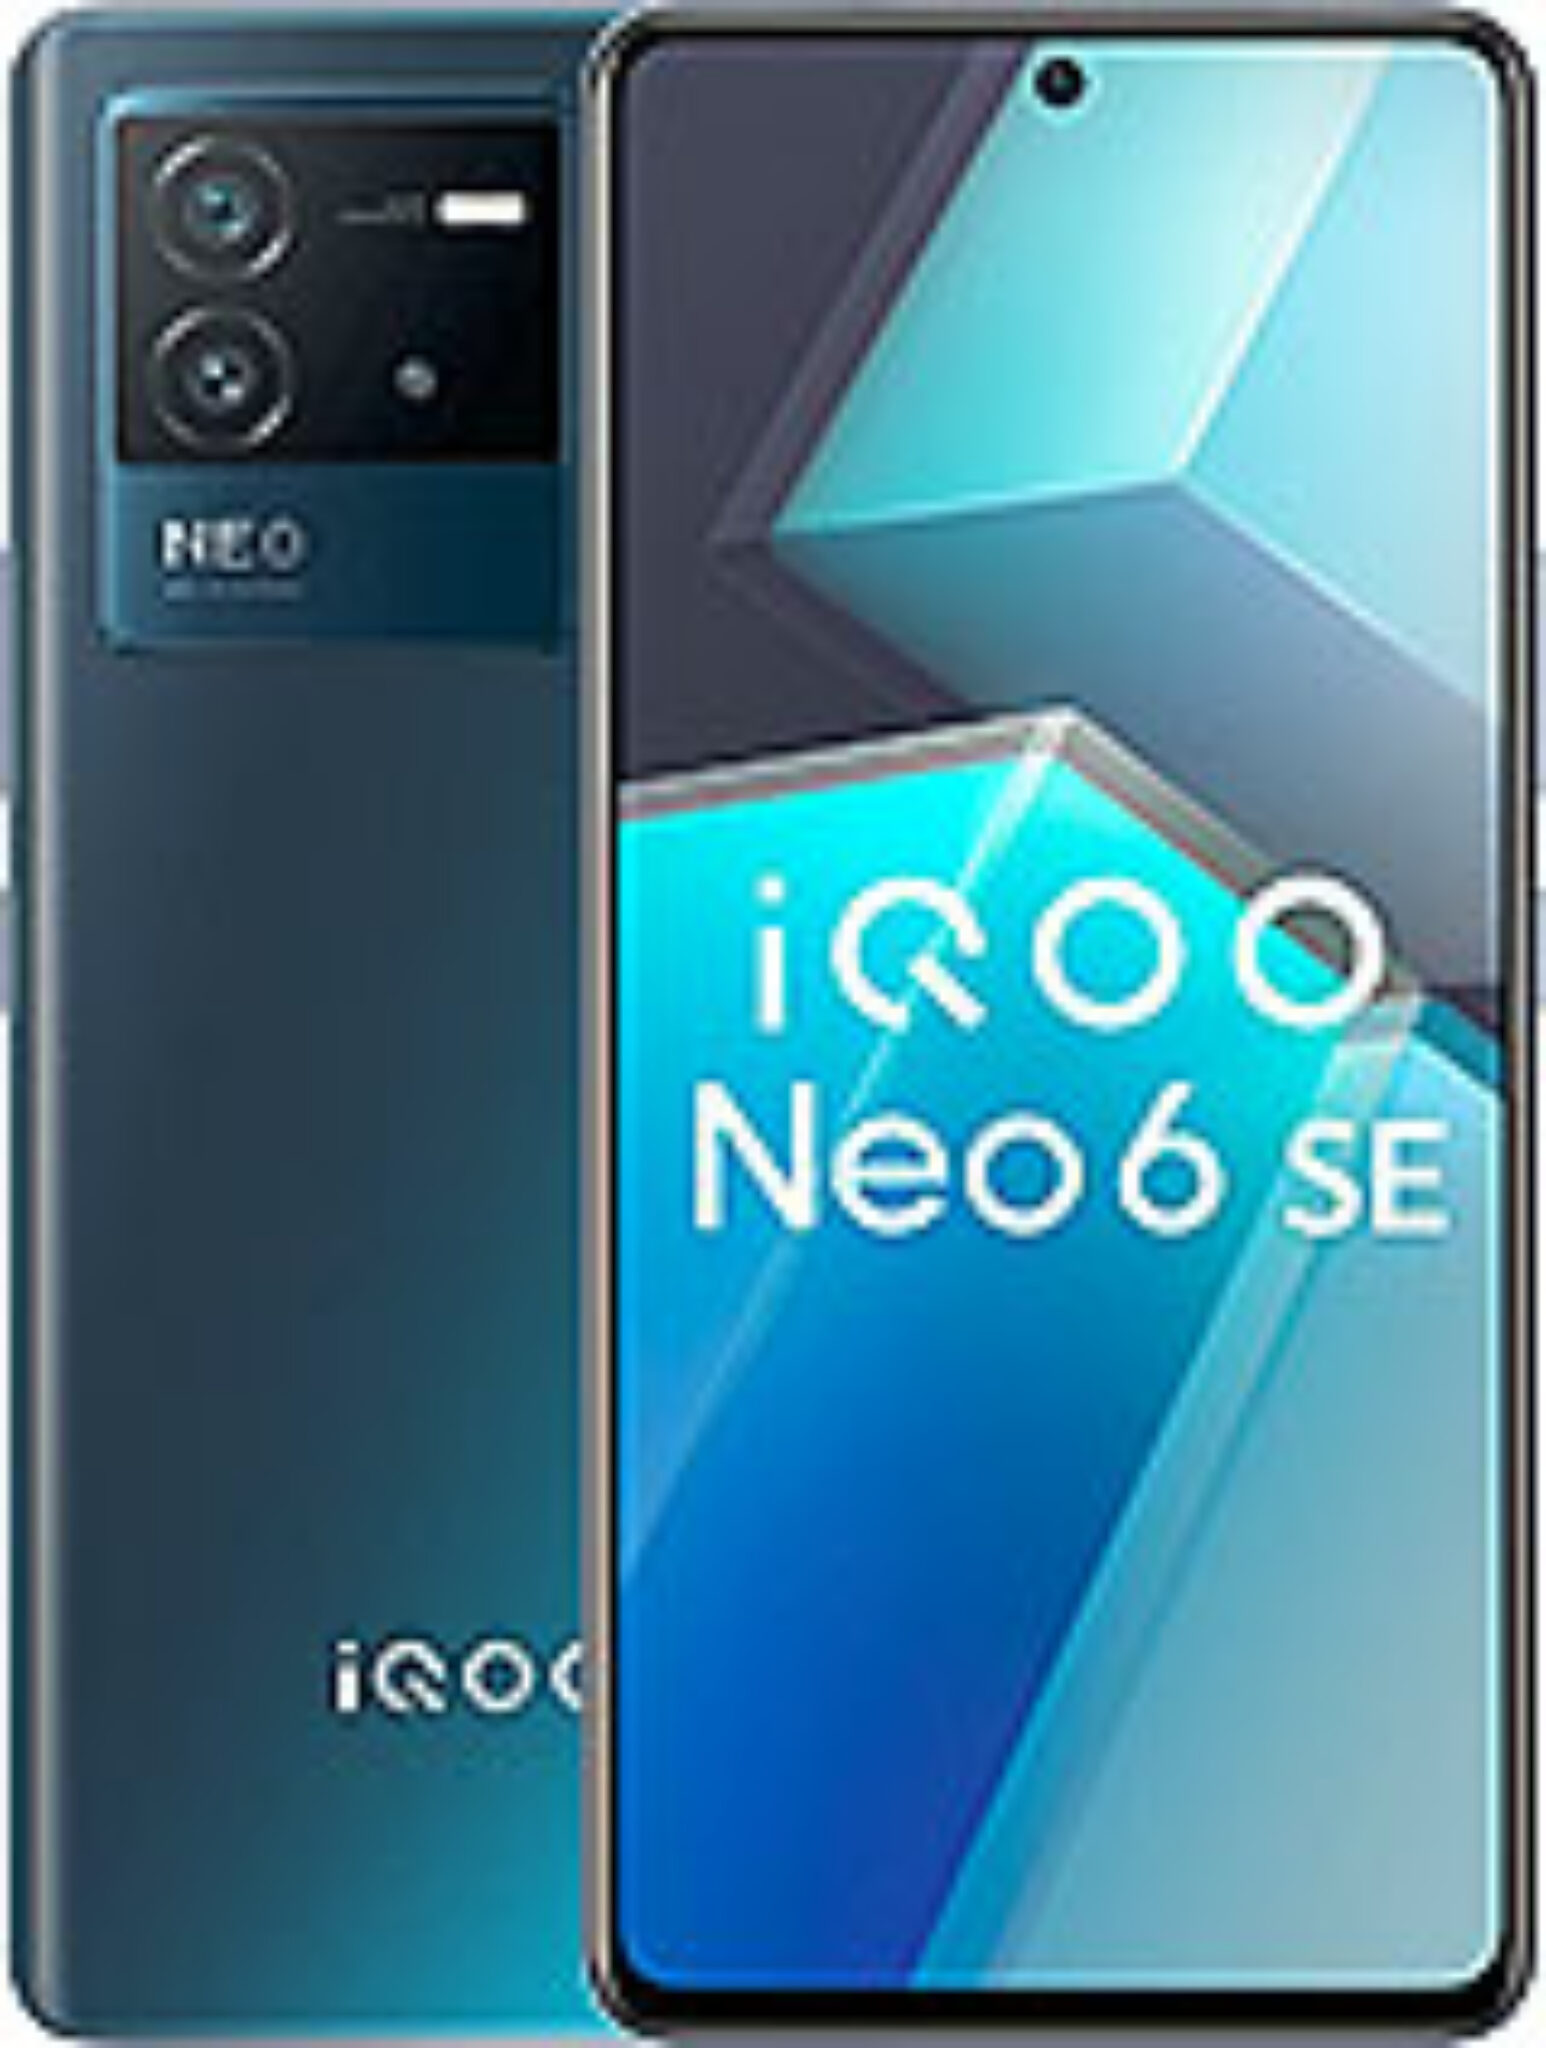 vivo iQOO Neo6 SE Price in Pakistan & Specifications